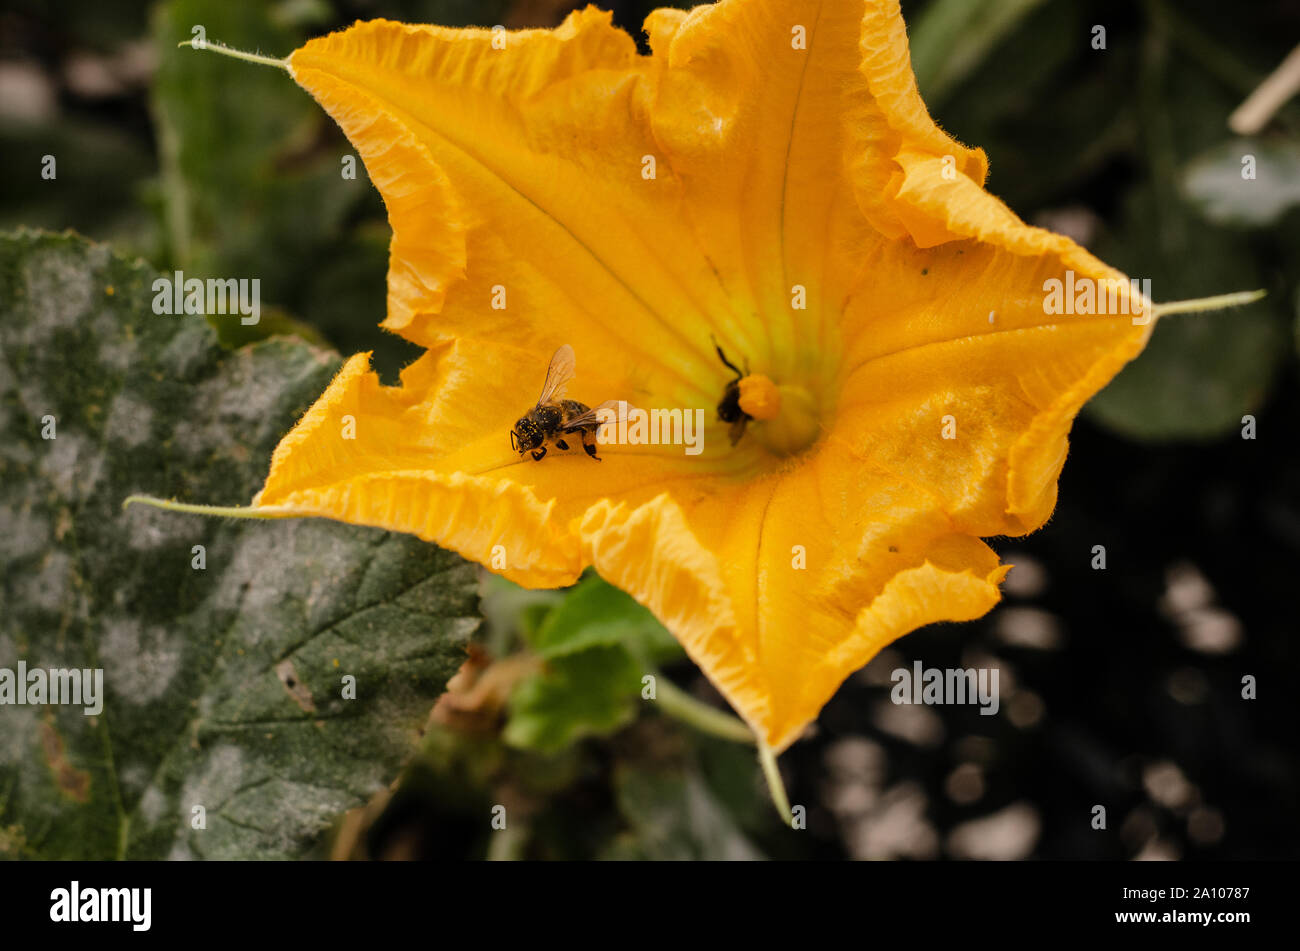 Zwei Bienen, die versuchen, die gelbe Blume eines Kürbis zu bestäuben. Der Körper eines der Bienen mit hat gelbe Blütenstaub. Stockfoto